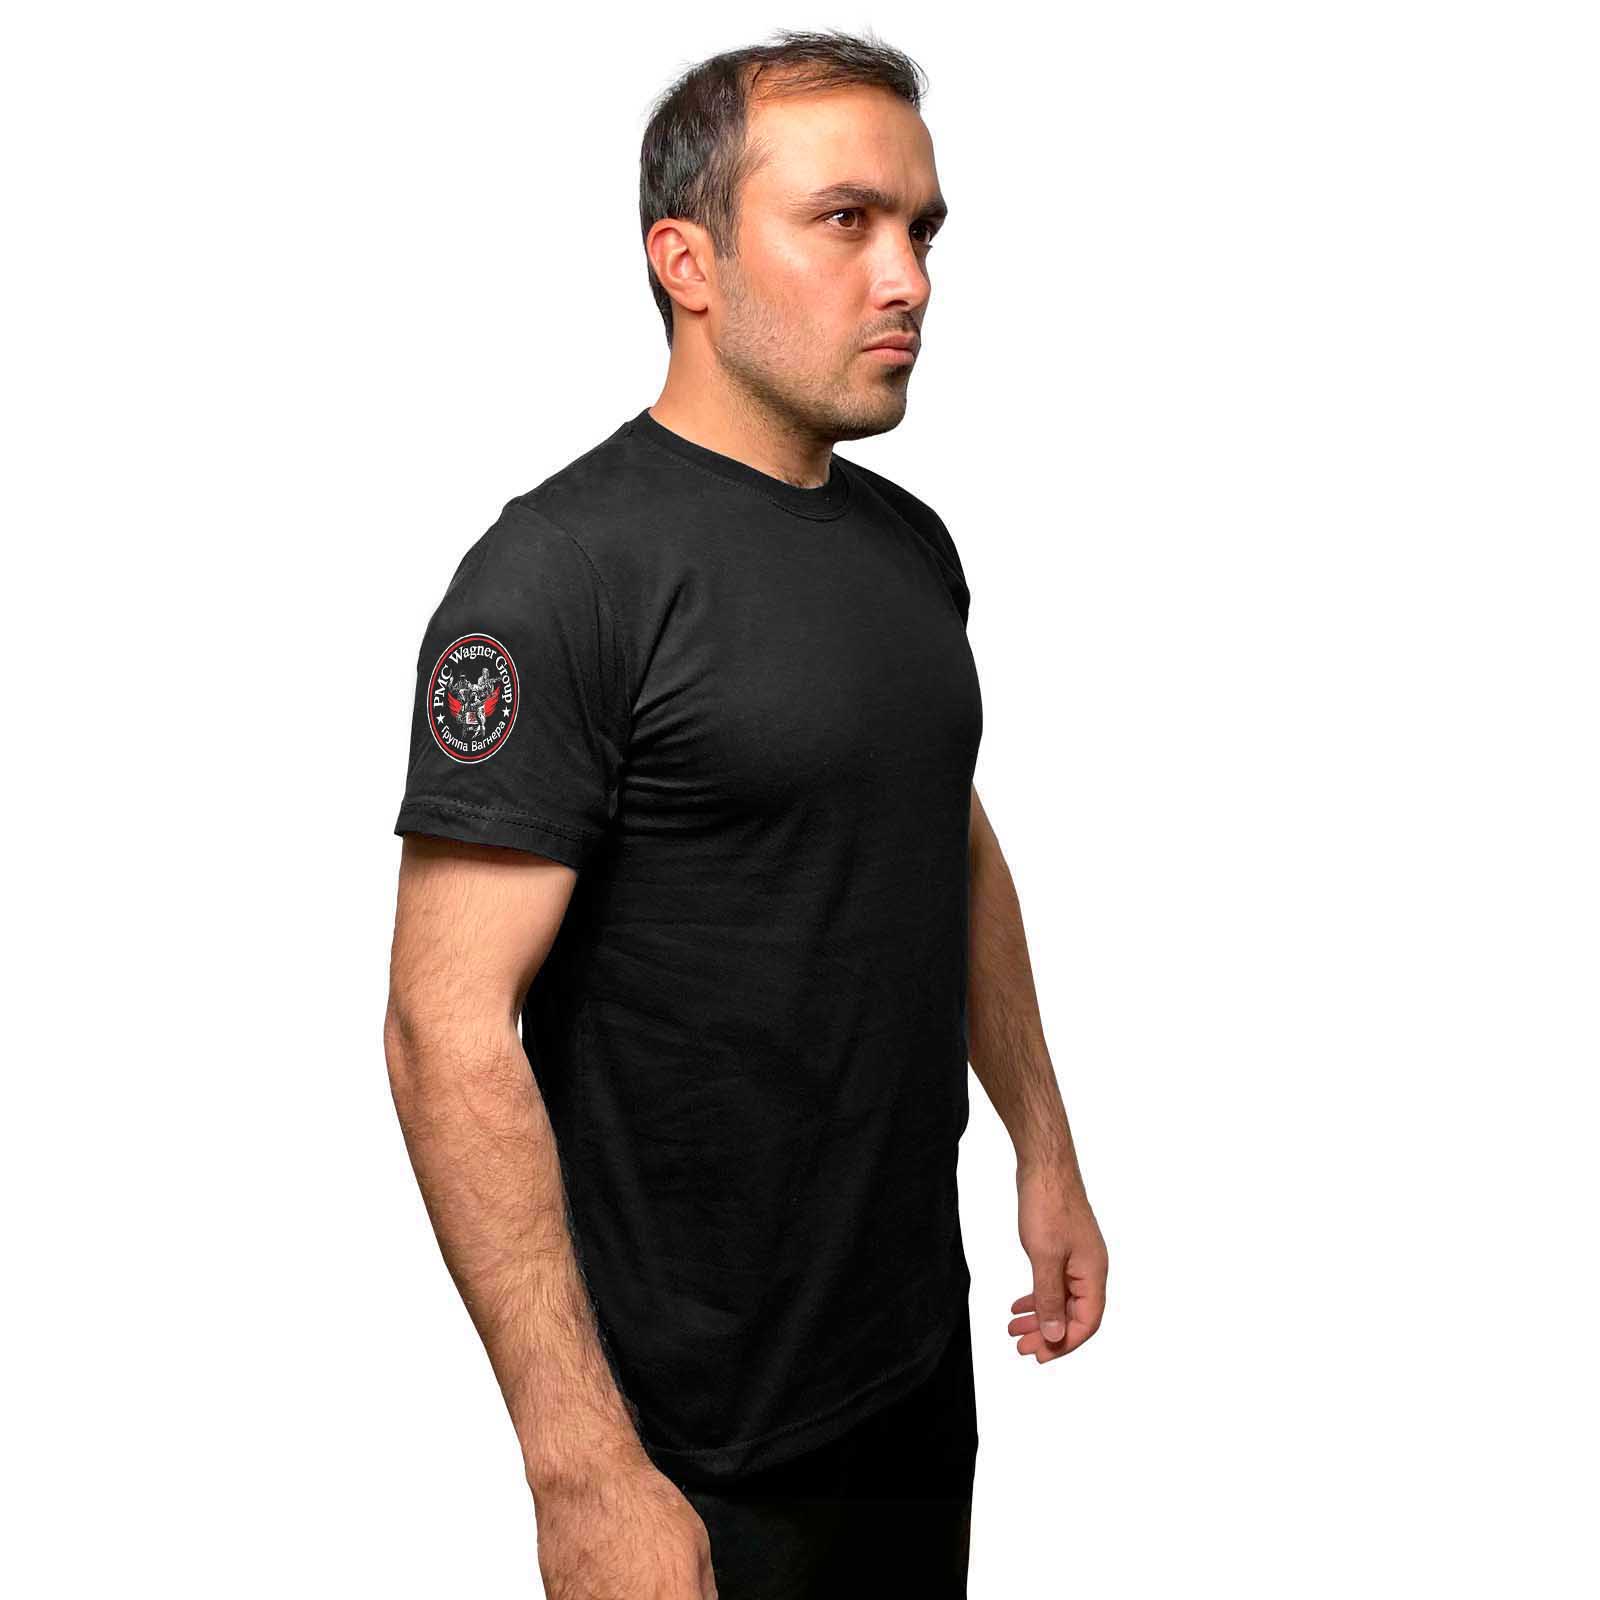 Купить хлопковую черную футболку с термотрансфером Группа Вагнера онлайн